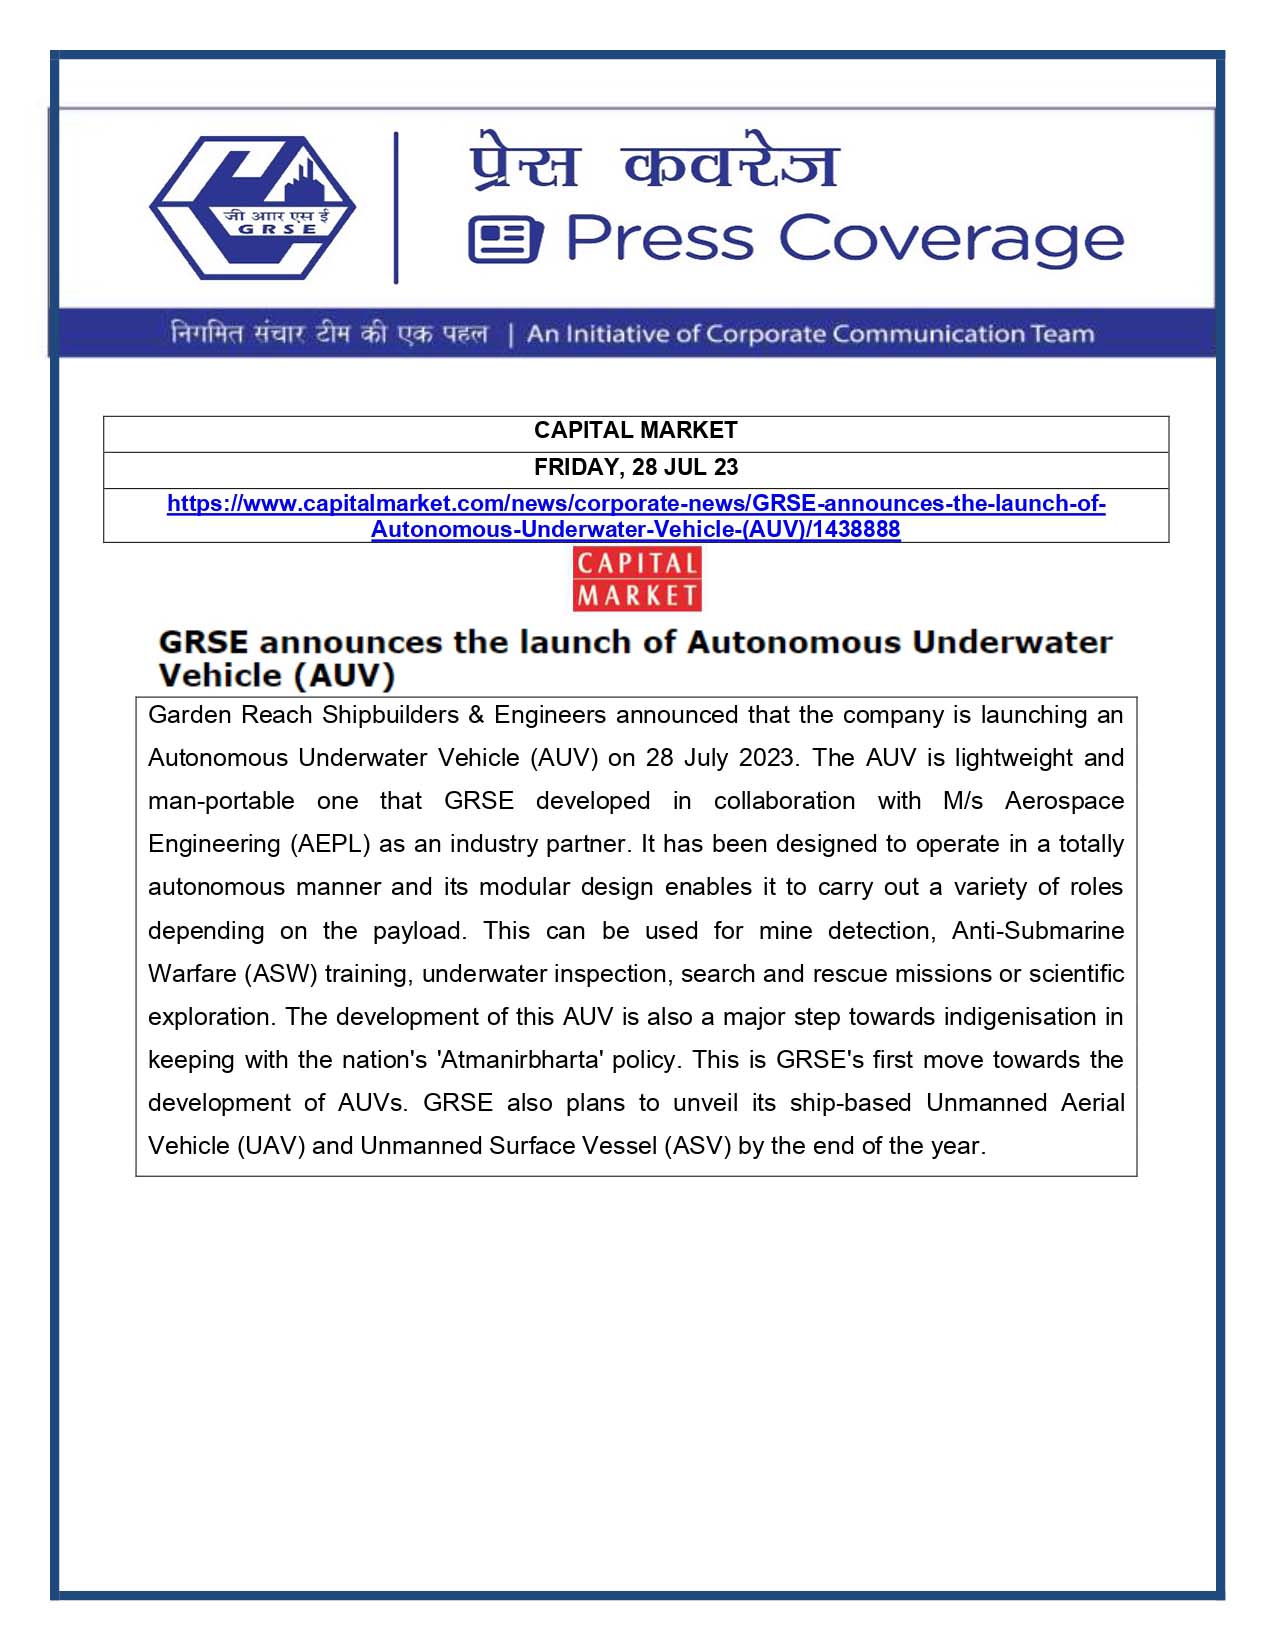 Press Coverage : Capital Market, 28 Jul 23 : GRSE announces launch of Autonomous Underwater Vehicle (AUV)